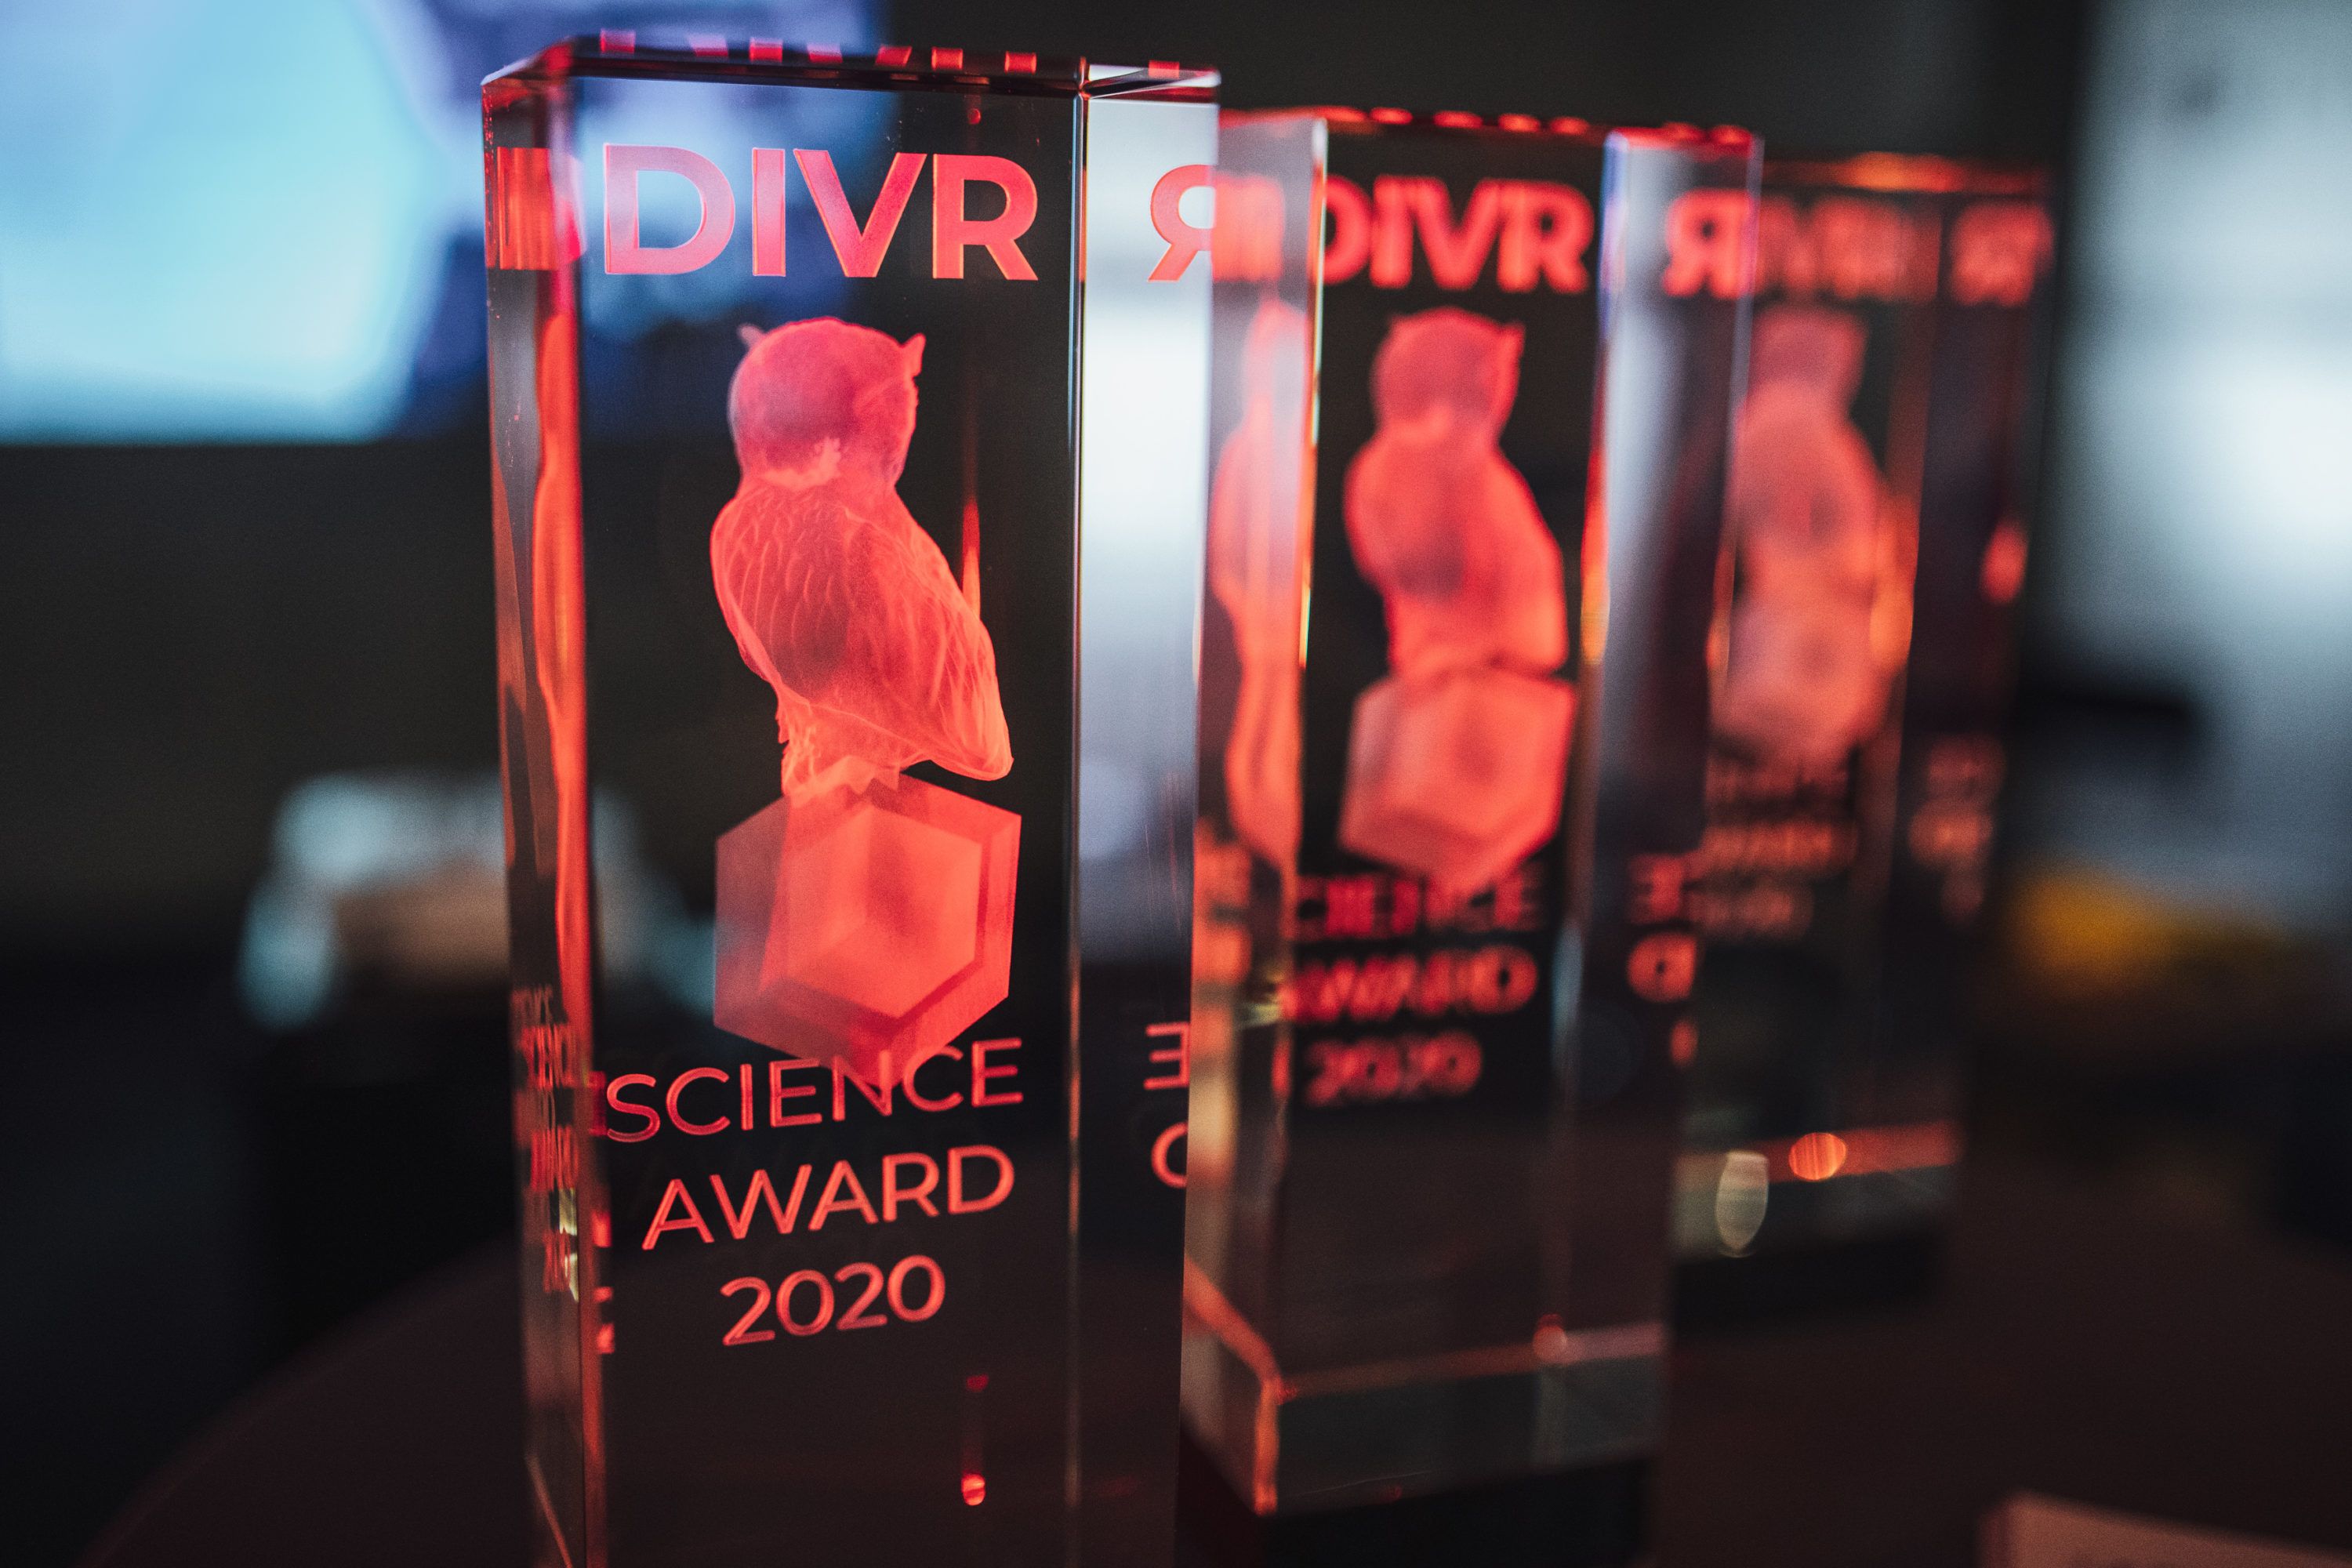 DIVR Science Award